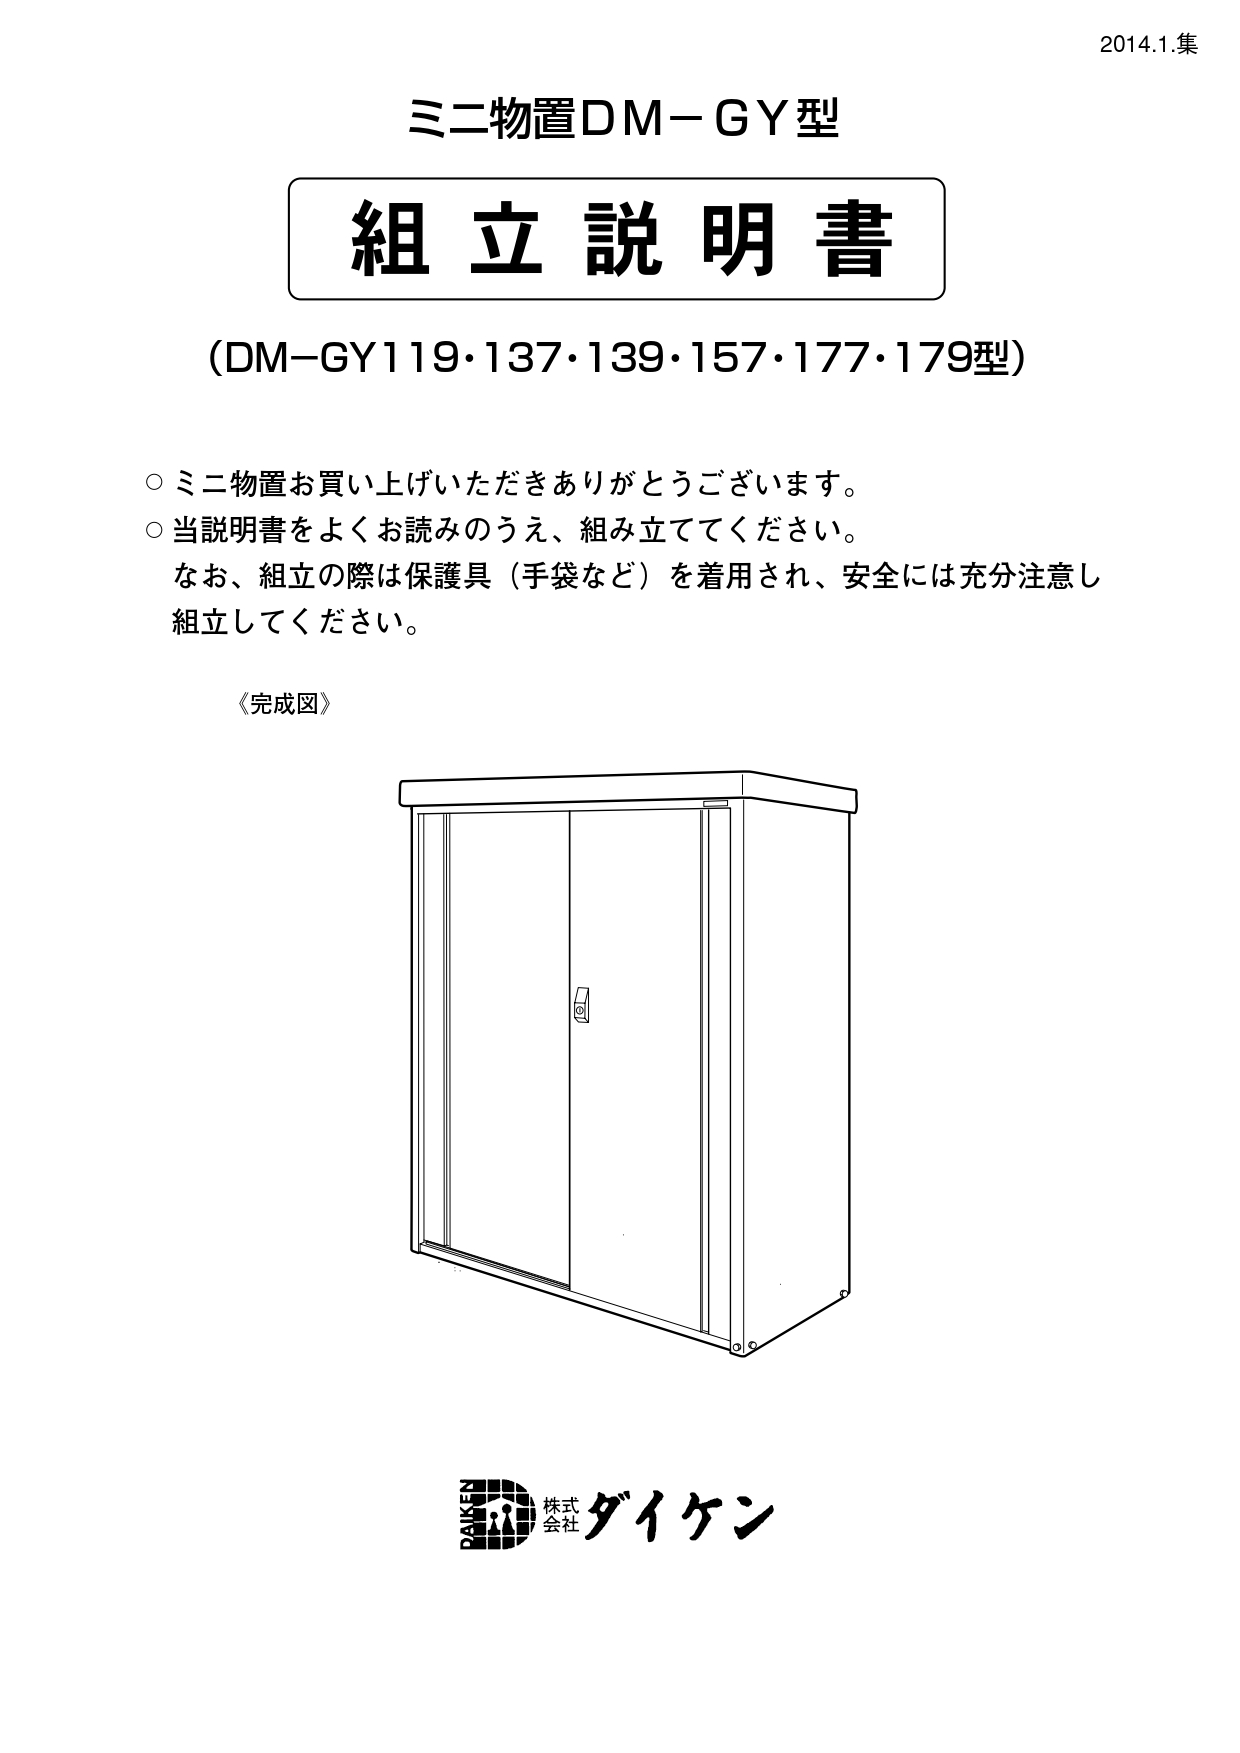 ダイケン】小型物置 DM-GY137 | 郵便ポスト・宅配ボックスの激安販売